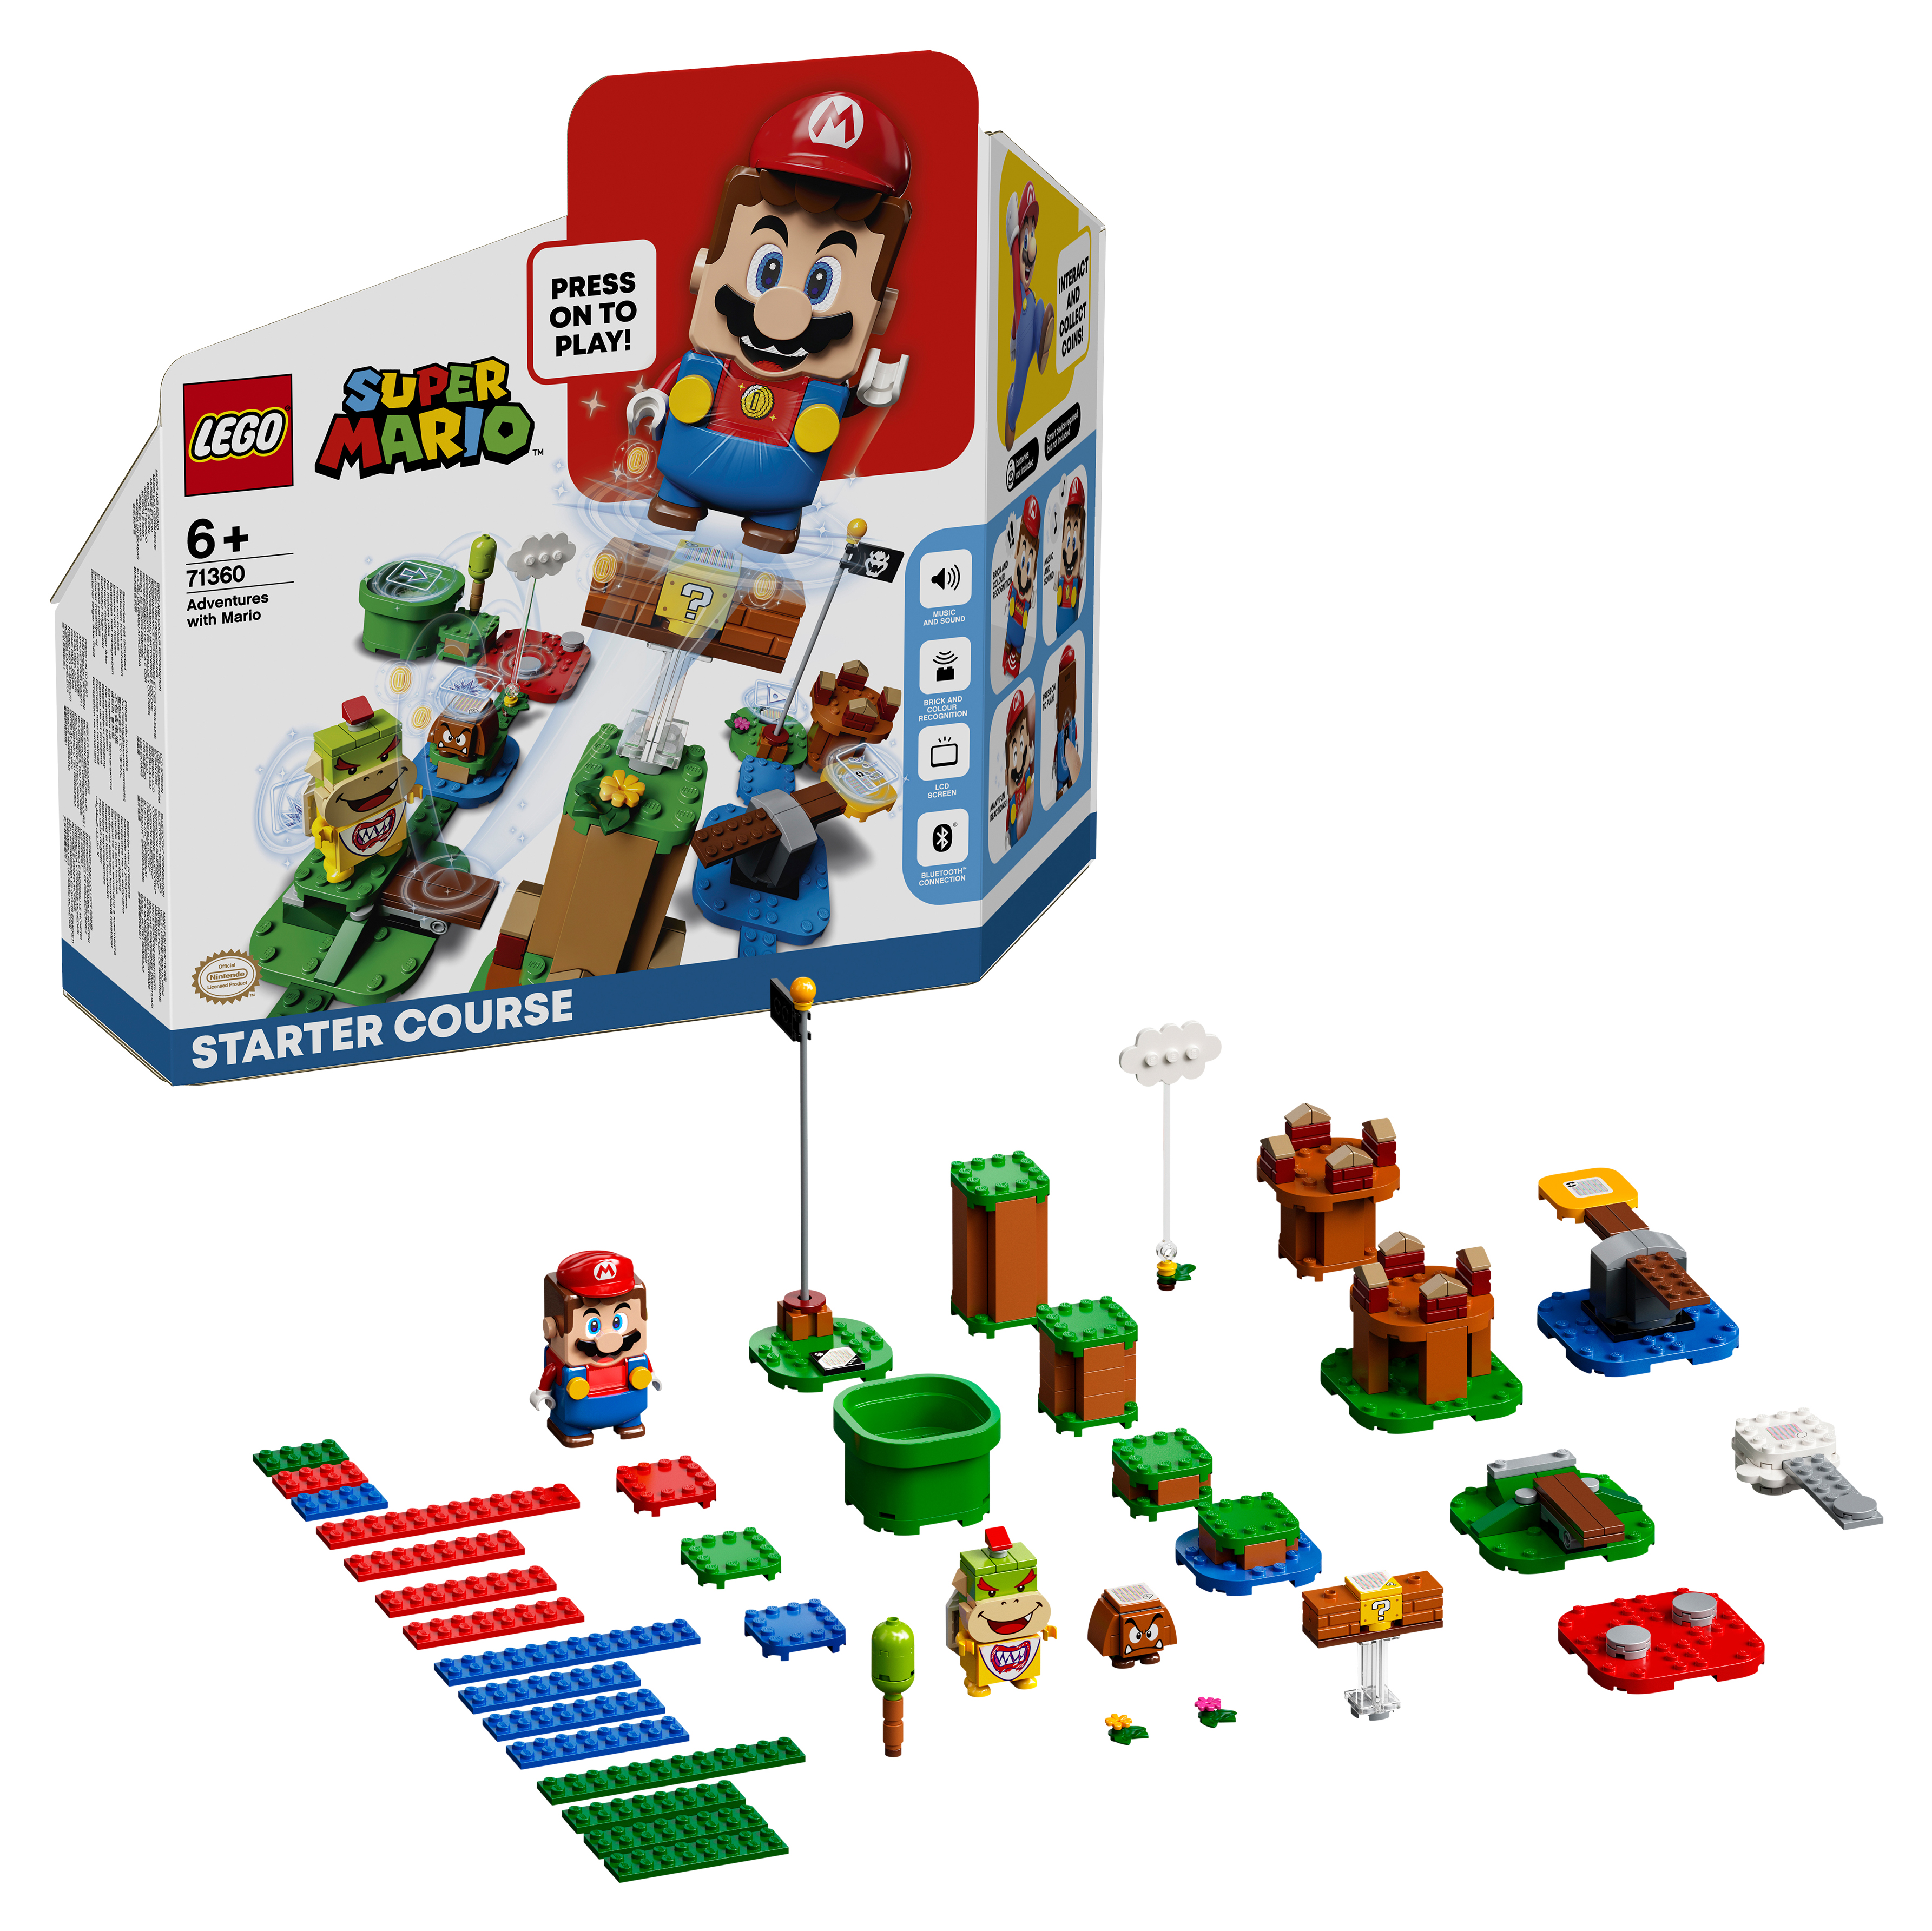 Конструктор LEGO Super Mario Приключения вместе с Марио Стартовый набор, 231 деталь, 71360 конструктор lego 71364 super mario whomps lava trouble expansion set